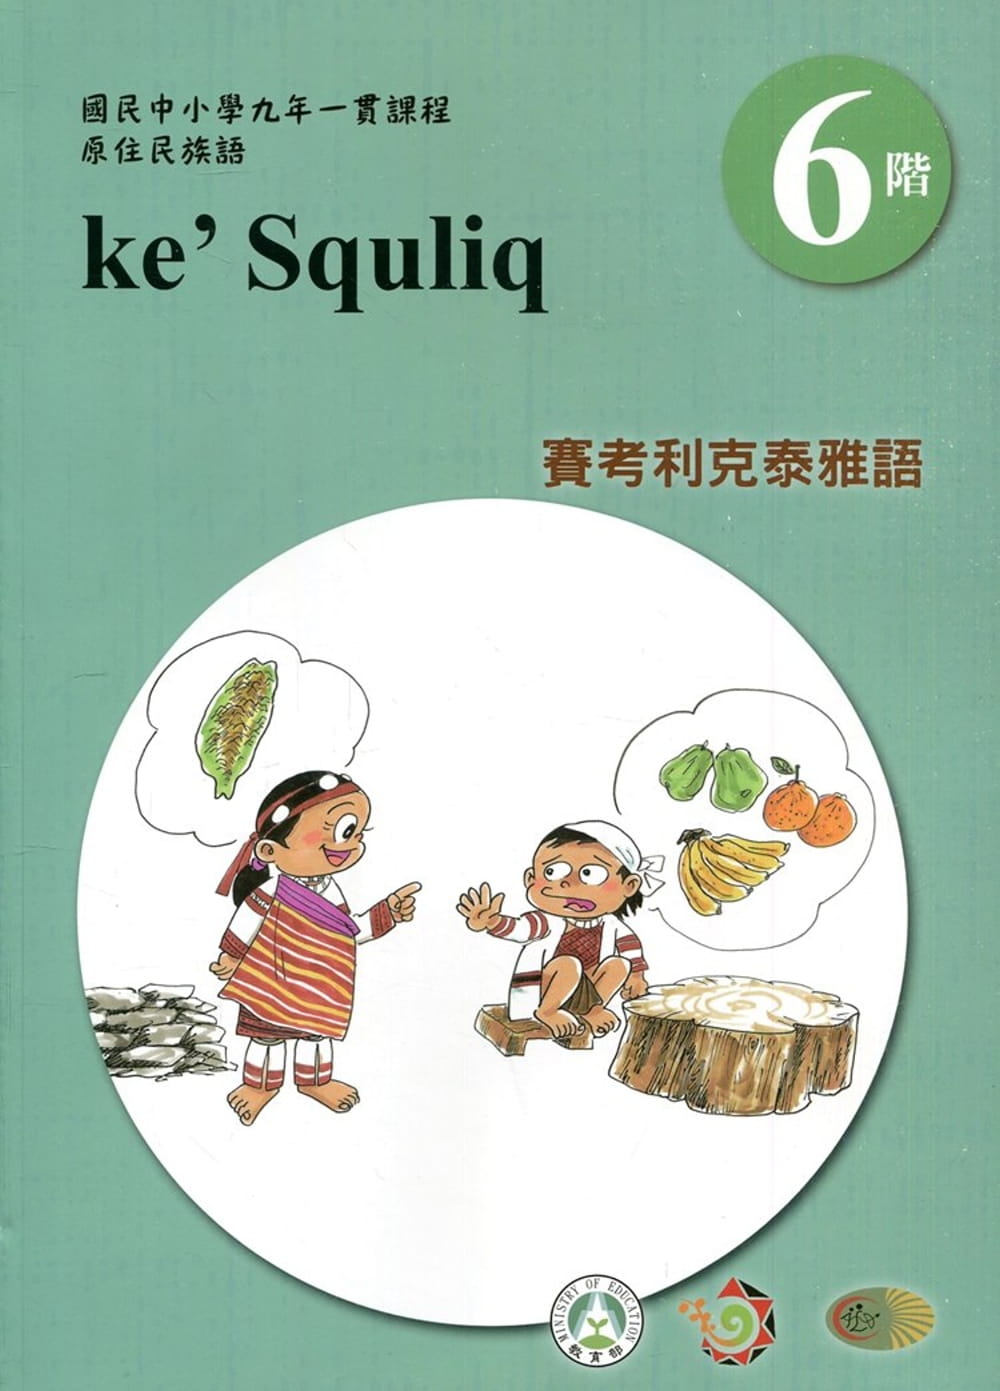 賽考利克泰雅語學習手冊第6階(附光碟)3版2刷